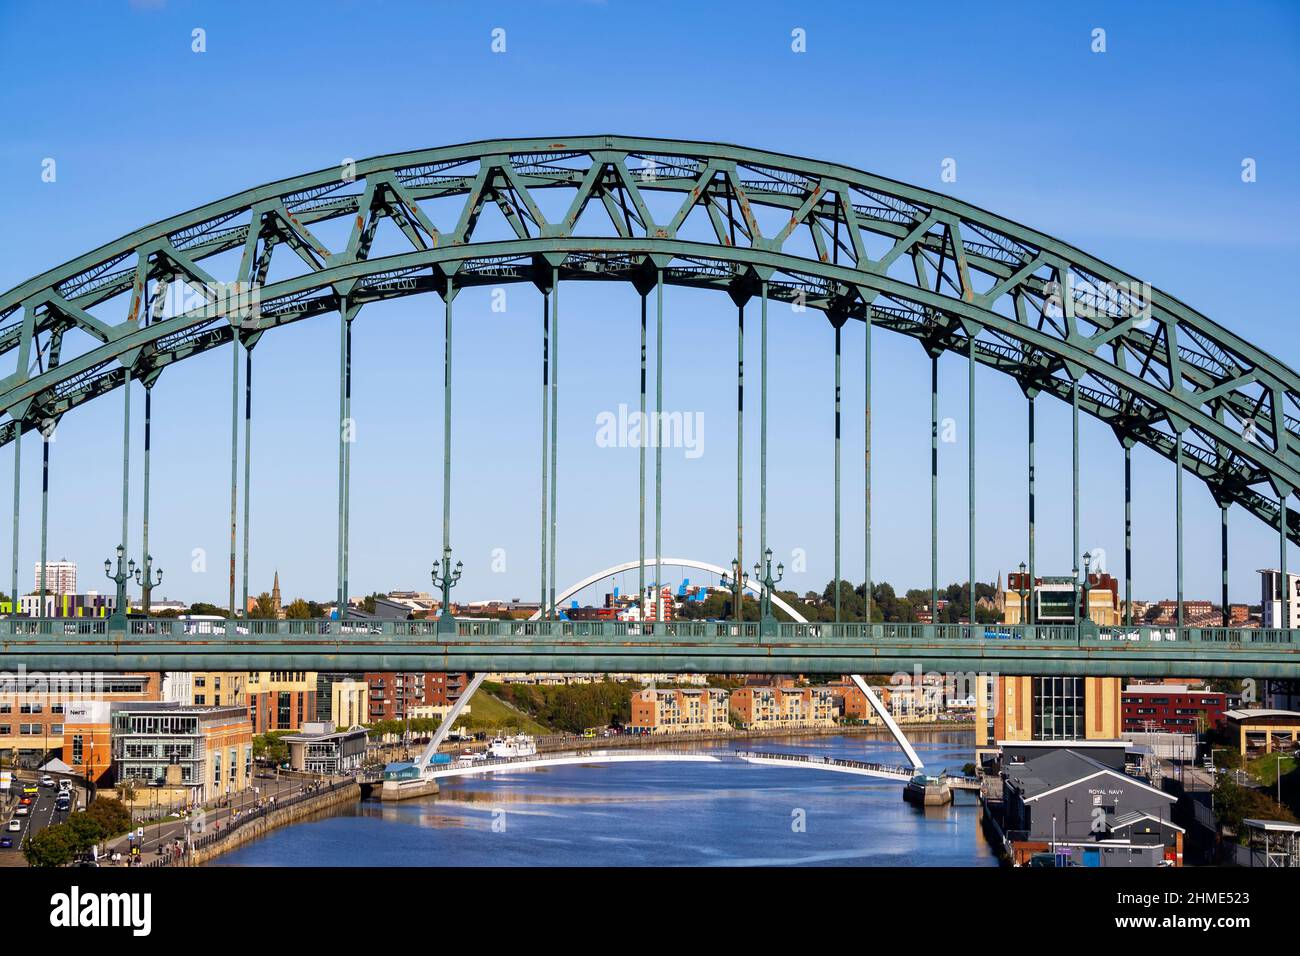 Vue rapprochée du pont Tyne à Newcastle upon Tyne (Angleterre), avec vue sur le pont du Millénaire de Gateshead par une journée ensoleillée Banque D'Images